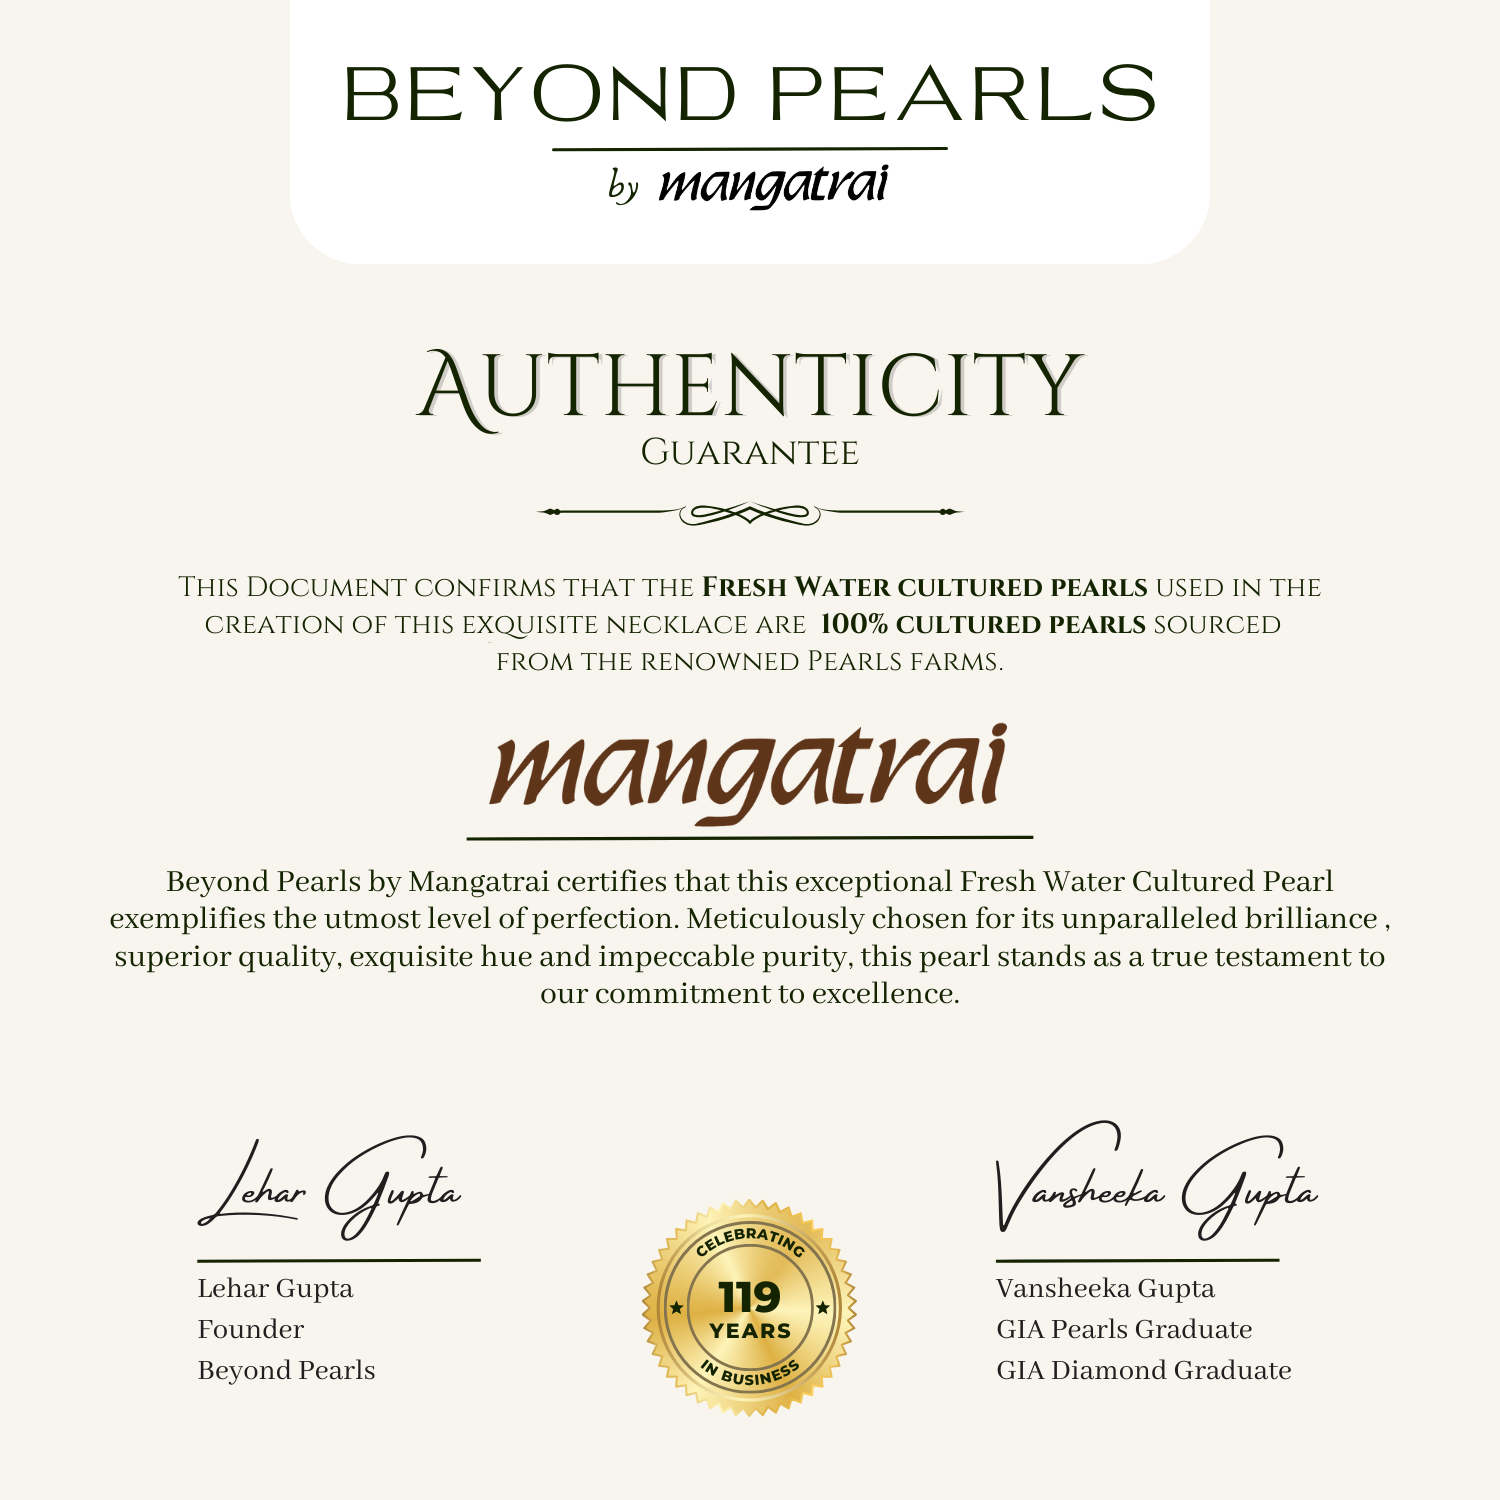 Authenticity Guarantee Certificate